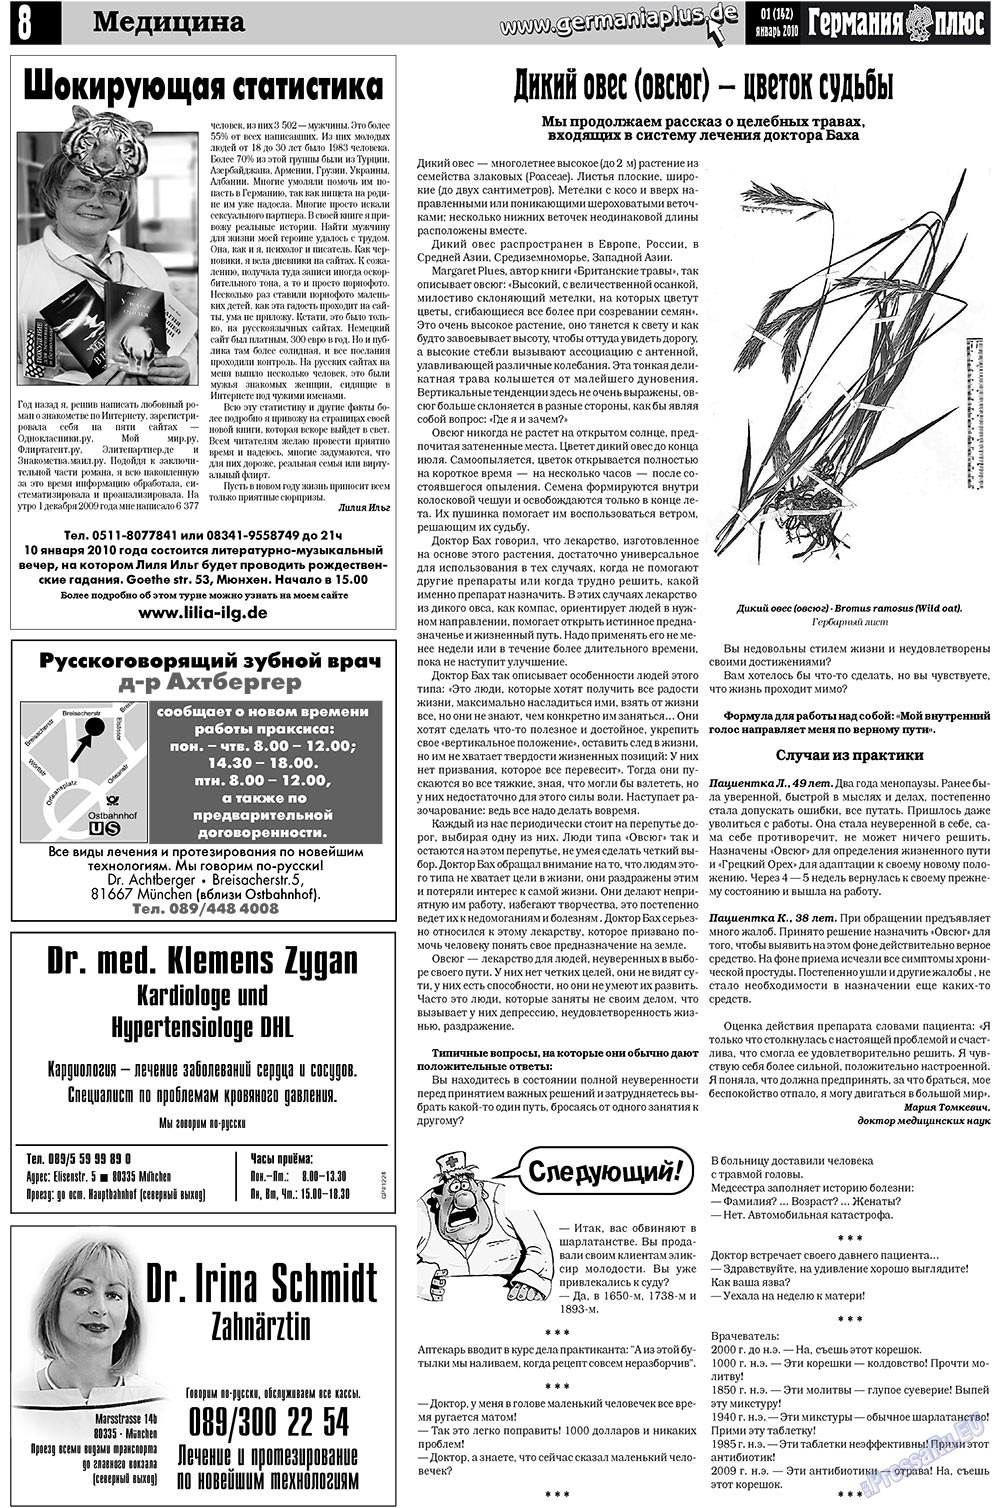 Германия плюс (газета). 2010 год, номер 1, стр. 8